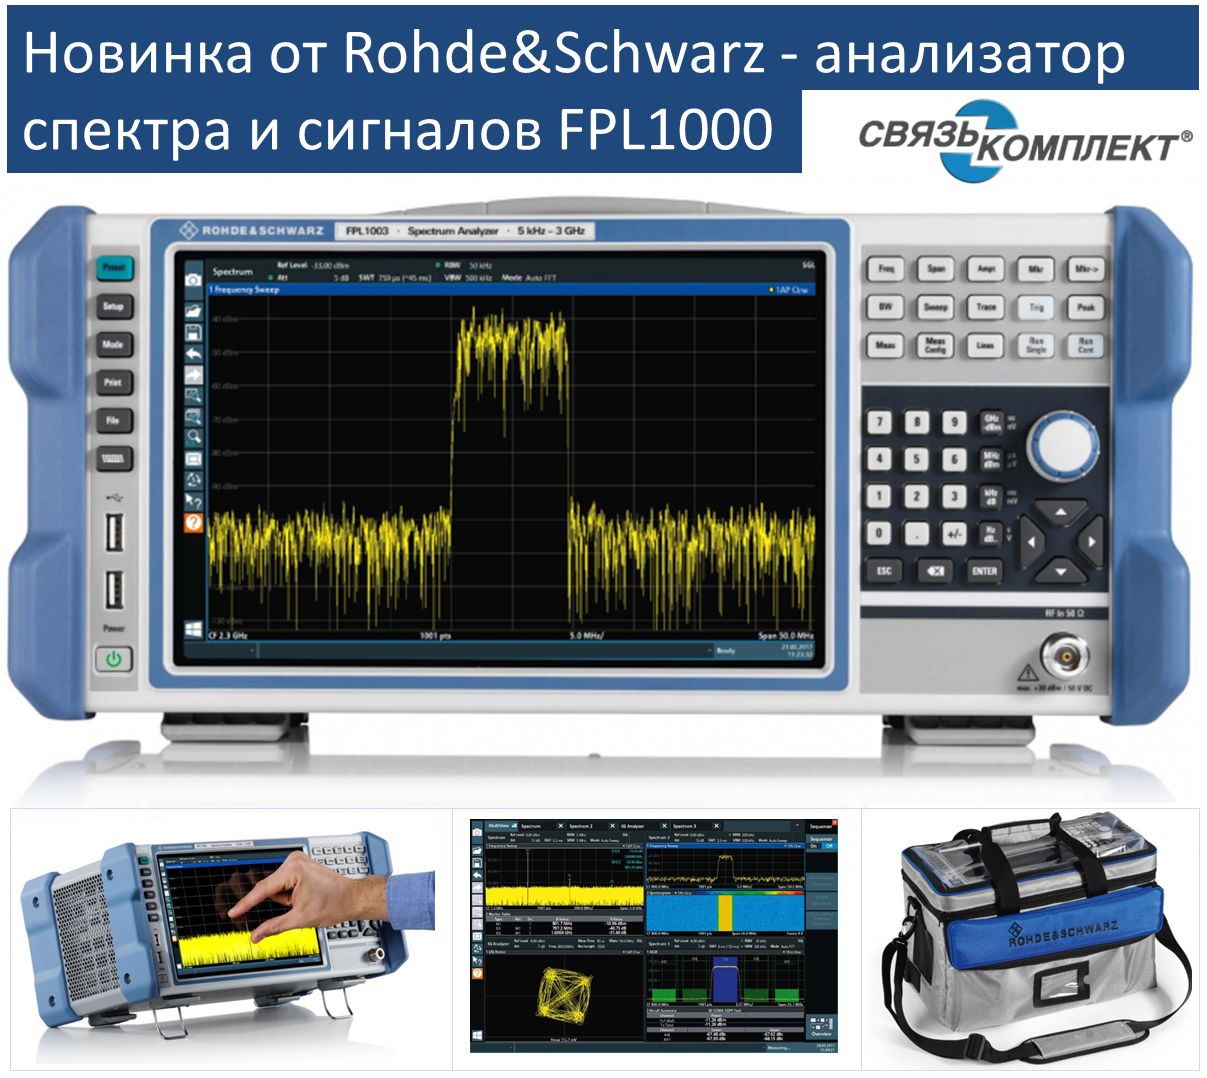 Новинка от Rohde&Schwarz - анализатор спектра и сигналов FPL1000